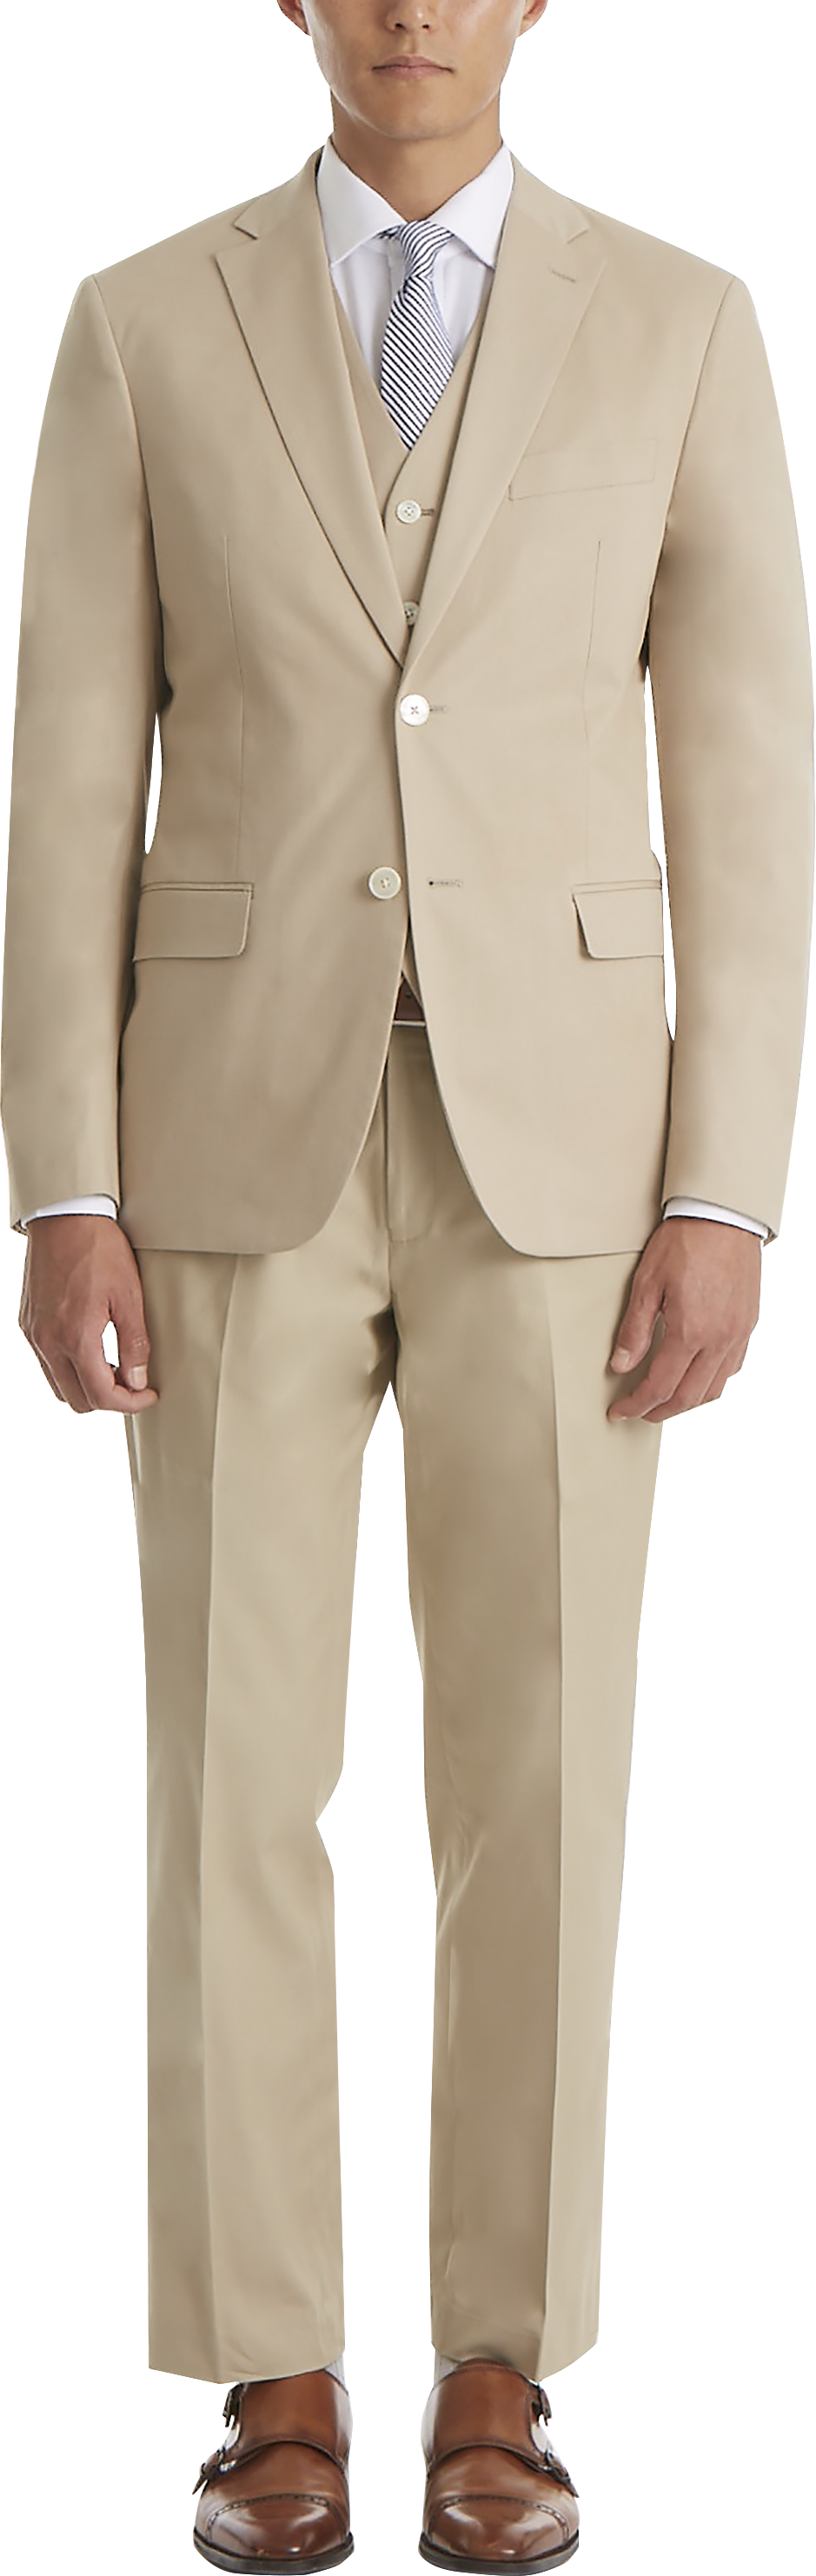 Lauren By Ralph Lauren Classic Fit Cotton Blend Suit Separates Coat, Tan -  Men's Suits | Men's